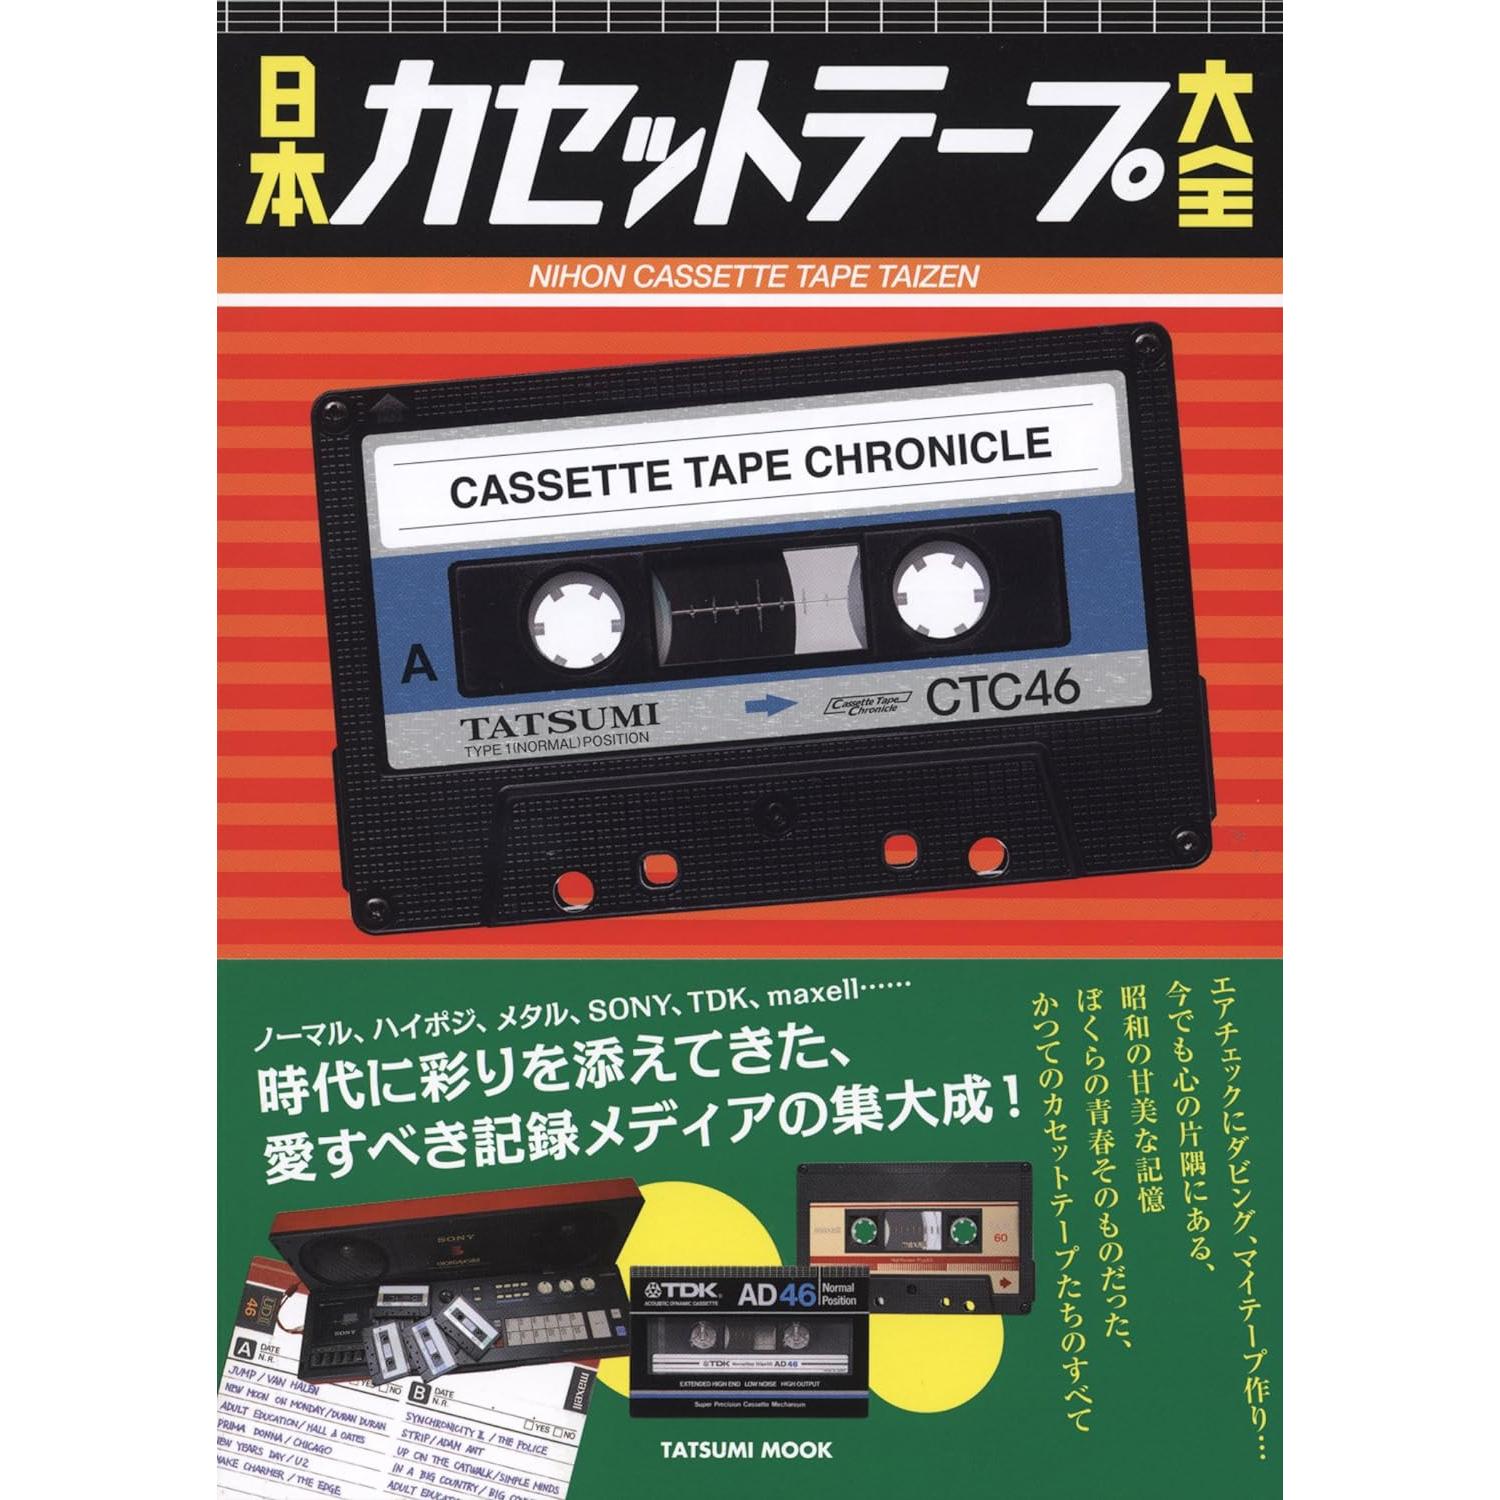 Japanese cassette tapes catalog